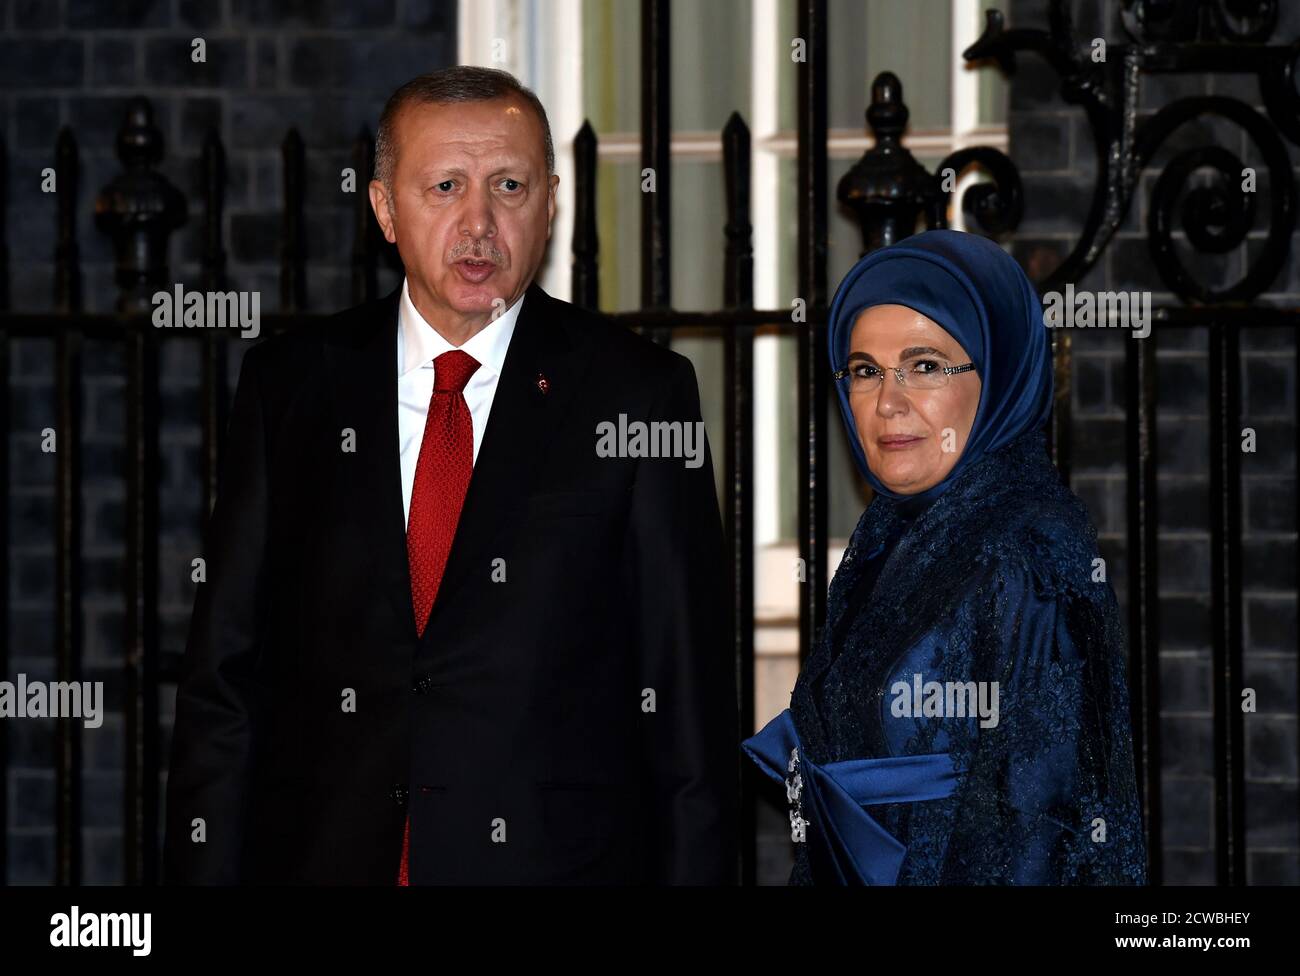 Photo de Recep Tayyip Erdogan, Président de la République de Turquie, participant au Sommet de l'OTAN à Londres, décembre 2019. Banque D'Images